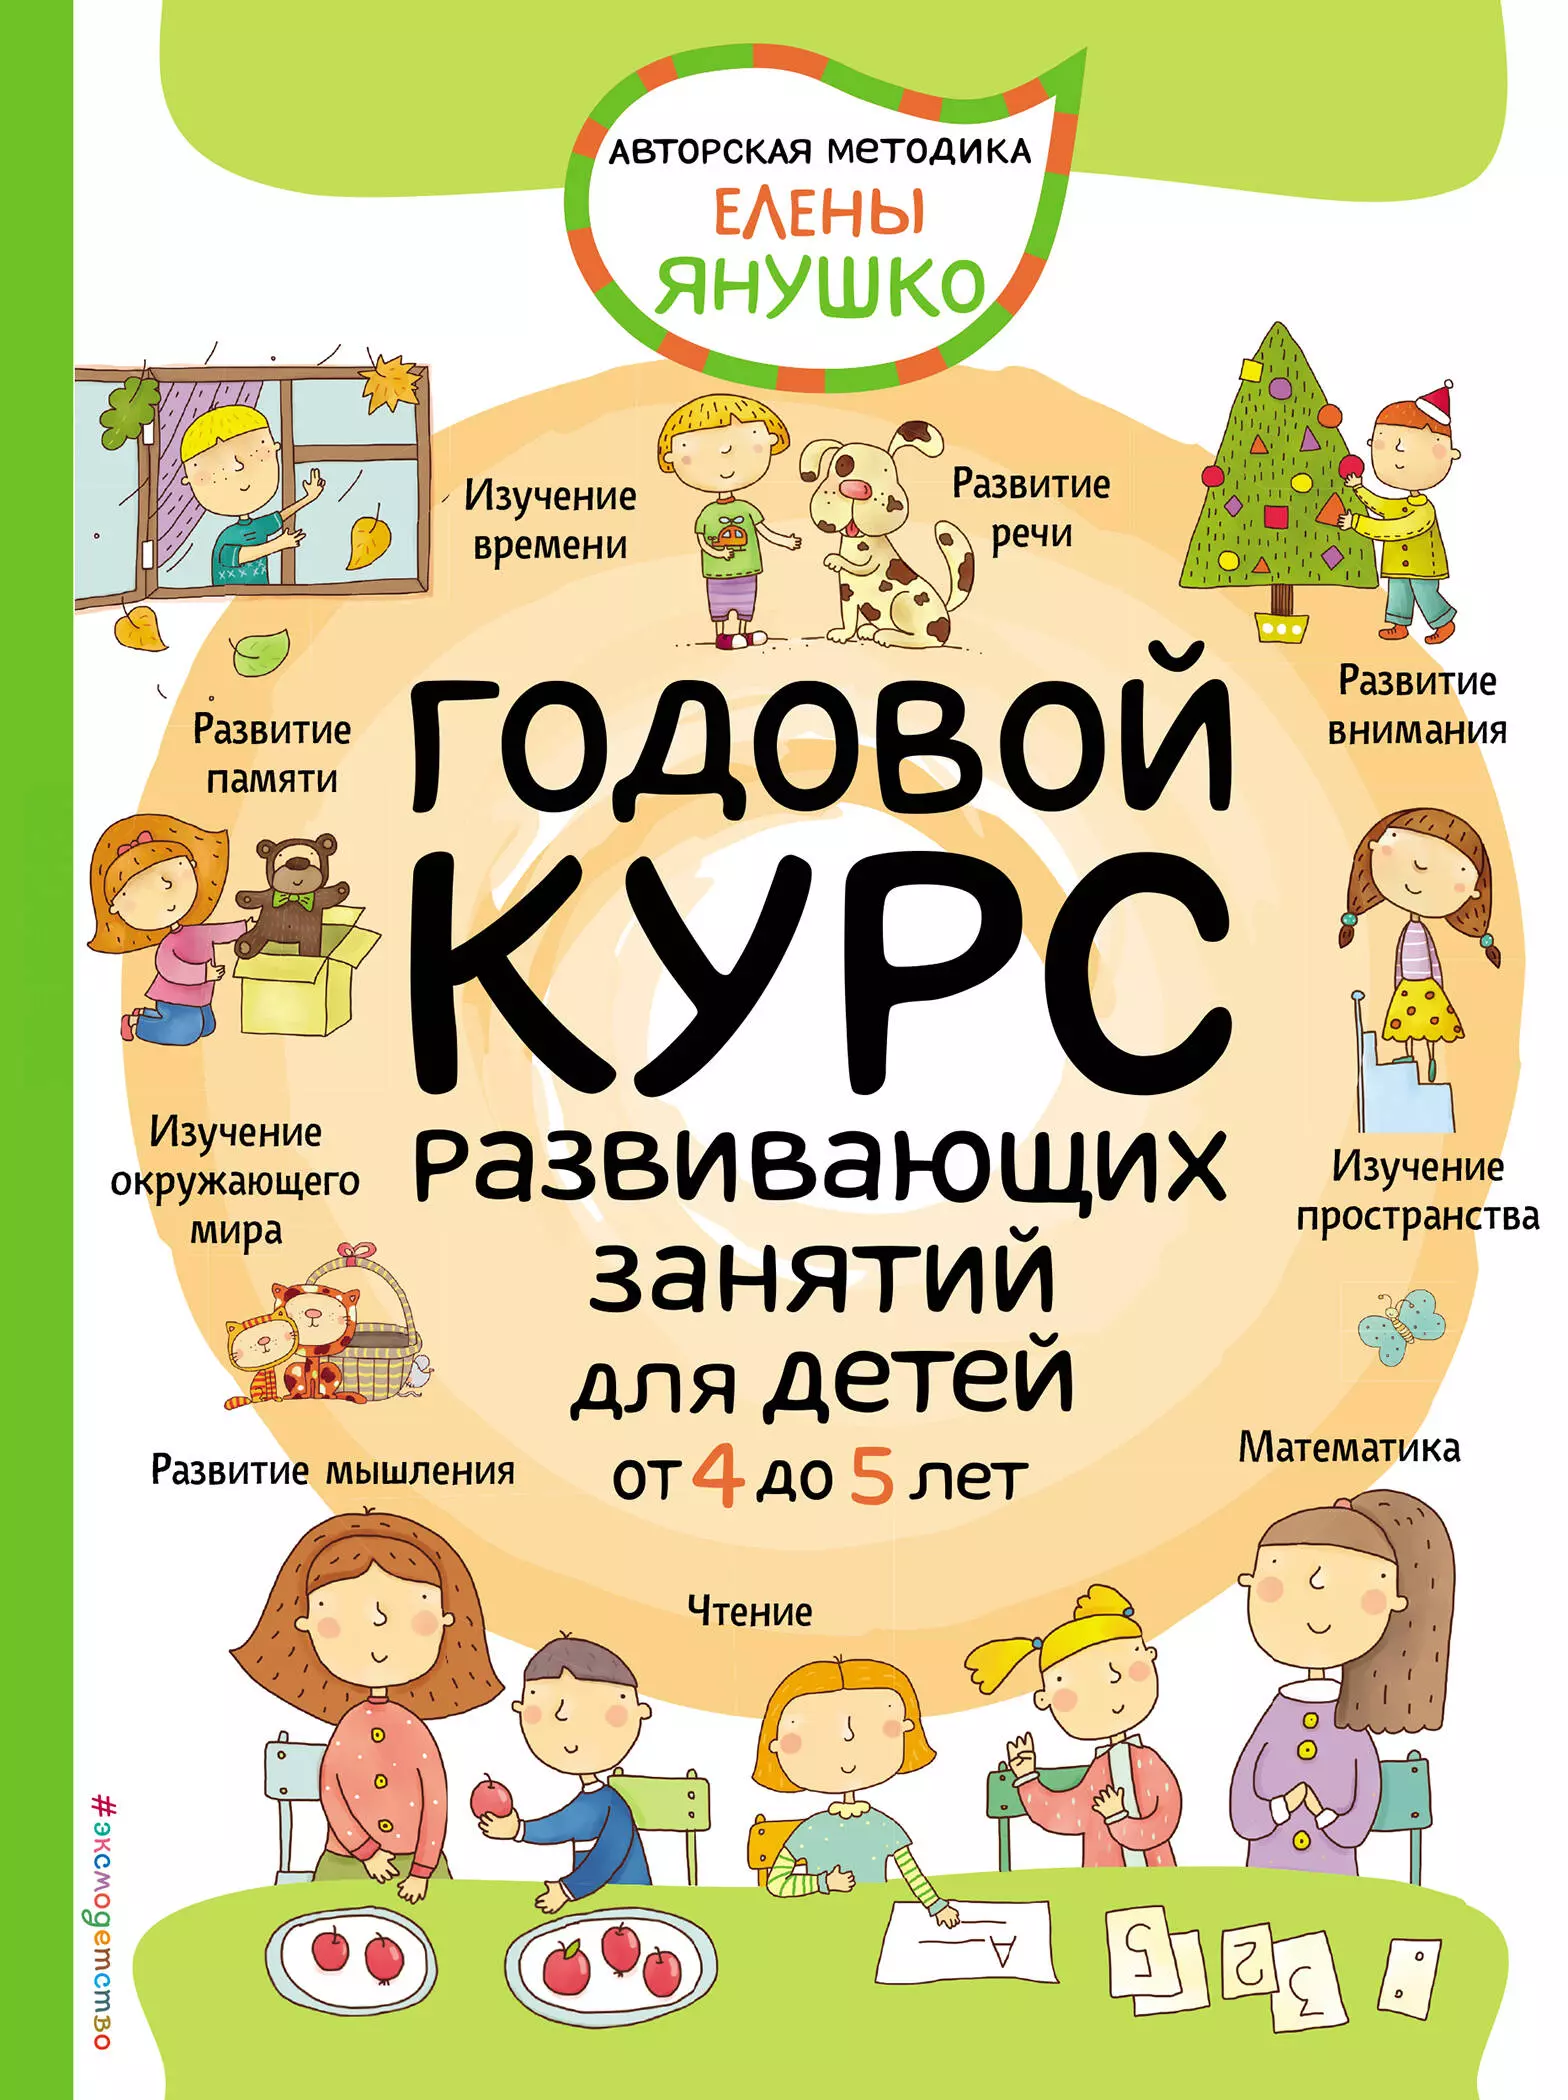 Янушко Елена Альбиновна - Годовой курс развивающих занятий для детей от 4 до 5 лет